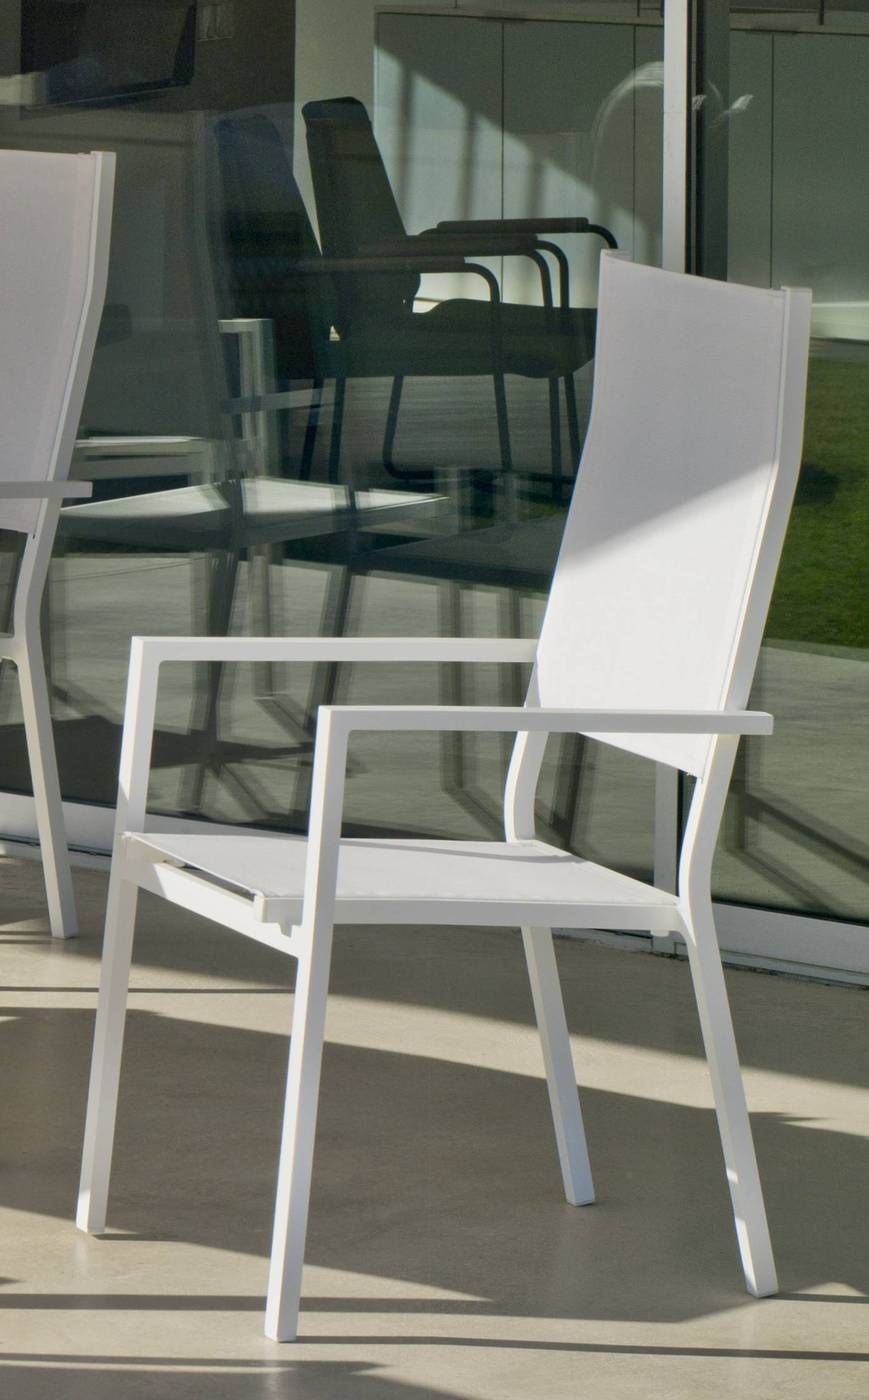 Set Palermo-160-6 Janeiro - Conjunto de aluminio para jardín: Mesa rectangular con tablero cerámico de 160 cm + 6 sillones altos de textilen. Colores: blanco y antracita.